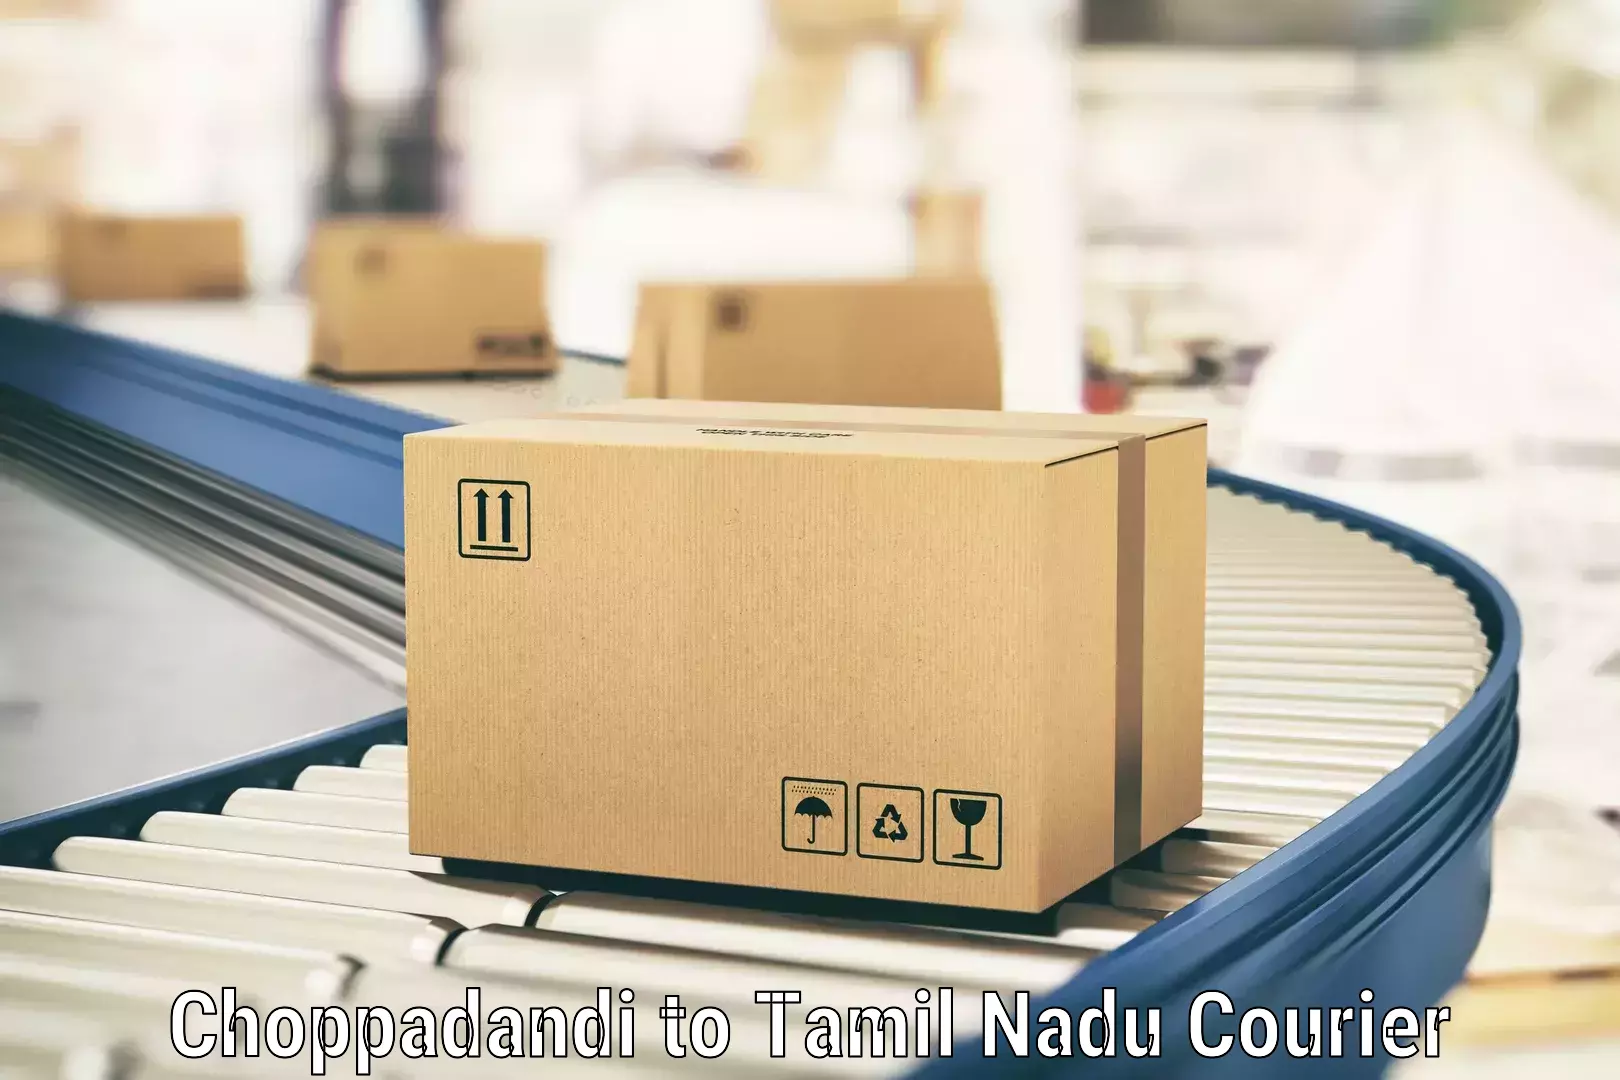 24/7 courier service Choppadandi to Marthandam